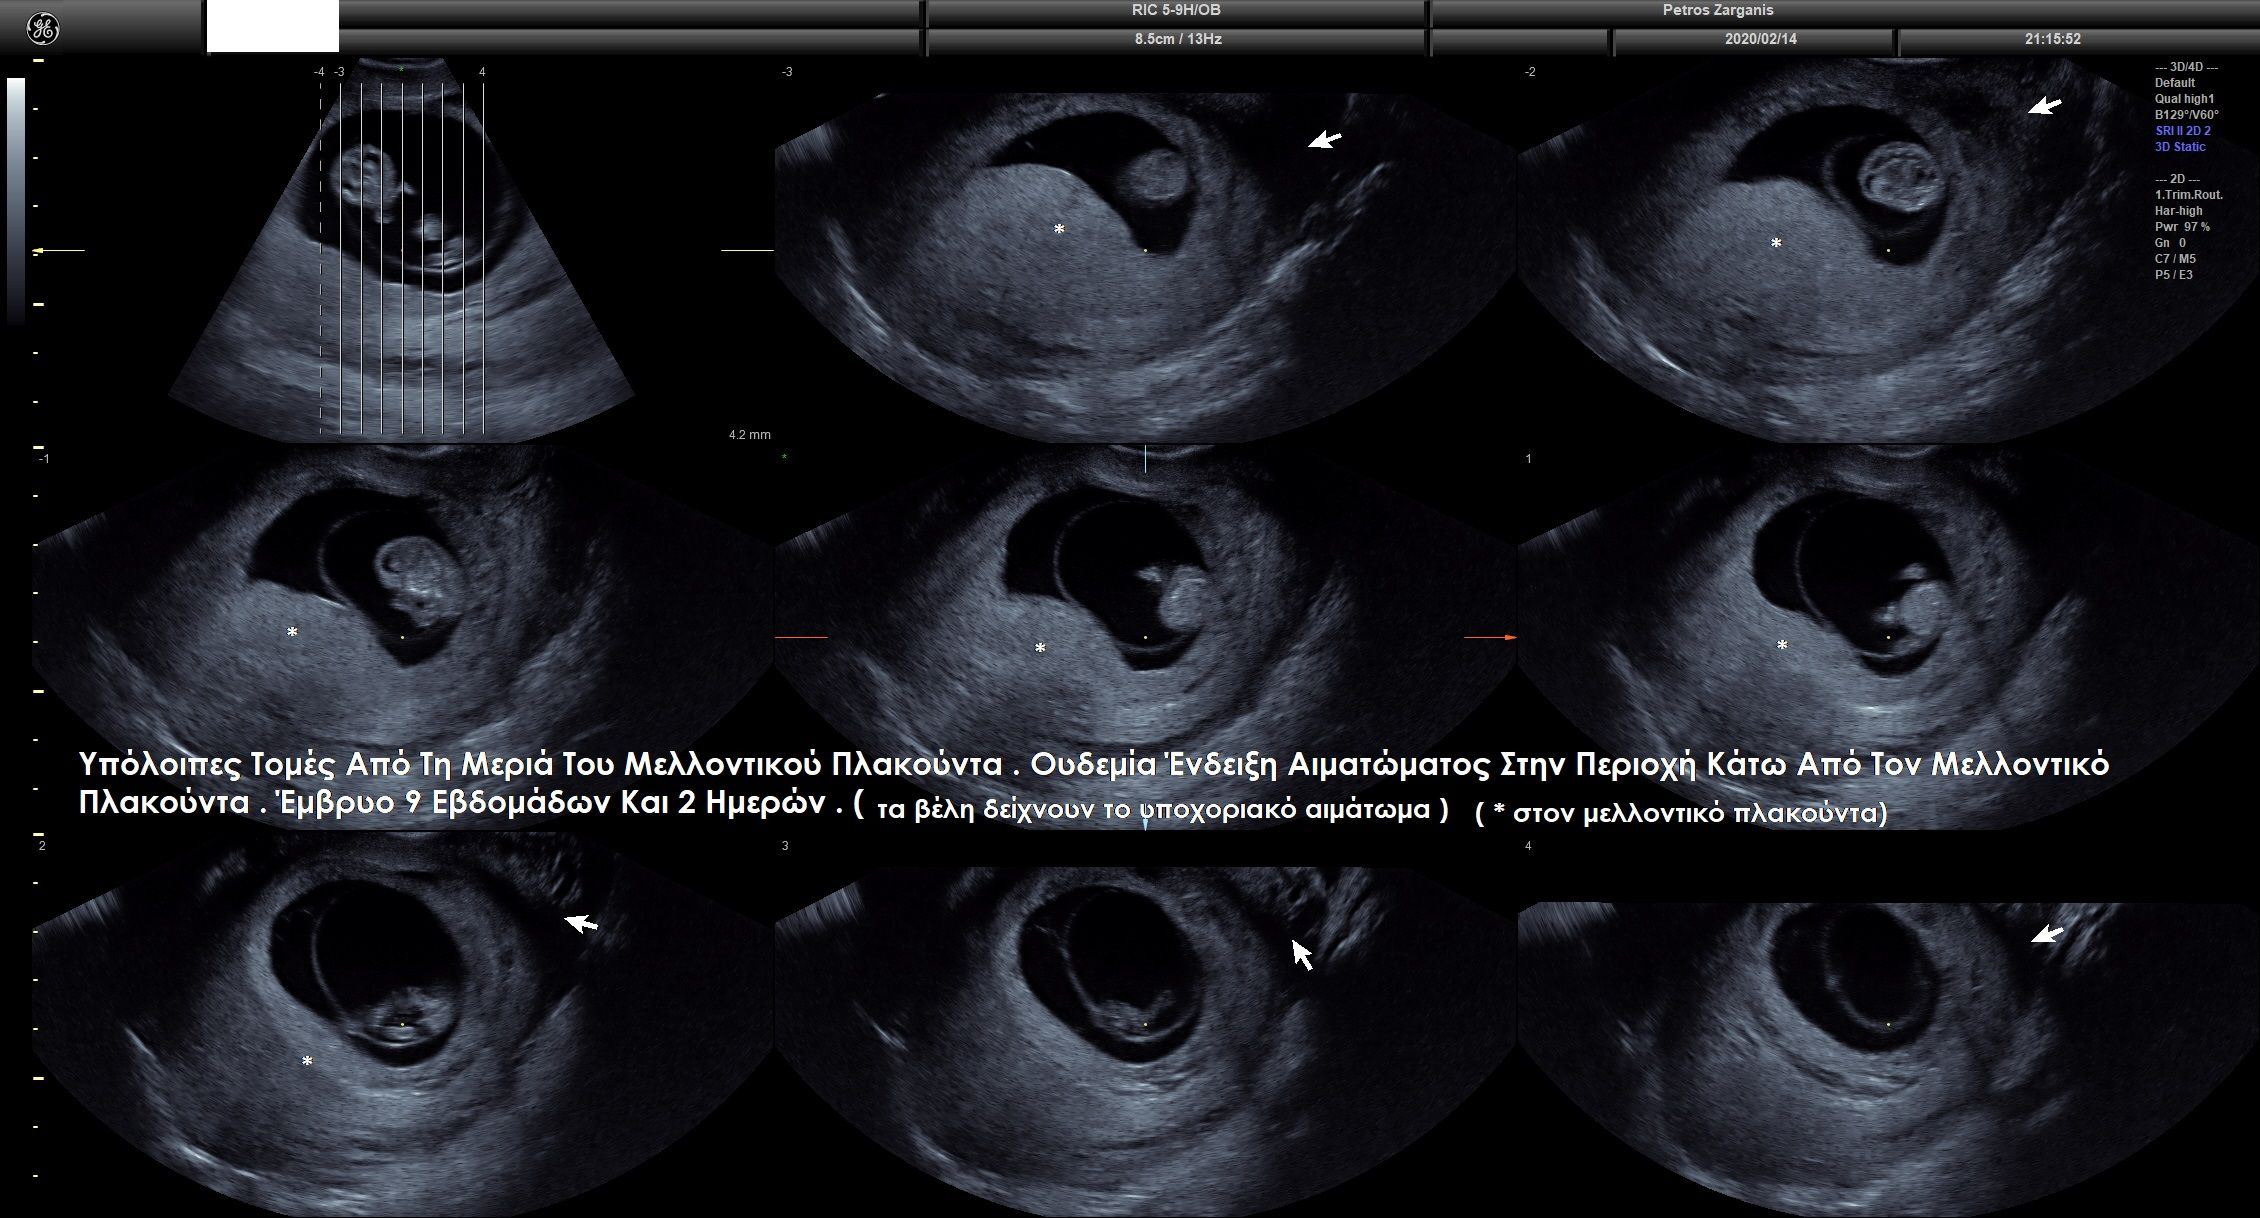 Απεικόνιση της εγκυμοσύνης στις 9 εβδομάδες και 2 ημέρες  με πολλαπλές τομές . 
Η υποχοριακή αιμορραγία φαίνεται στα βέλη . [2]